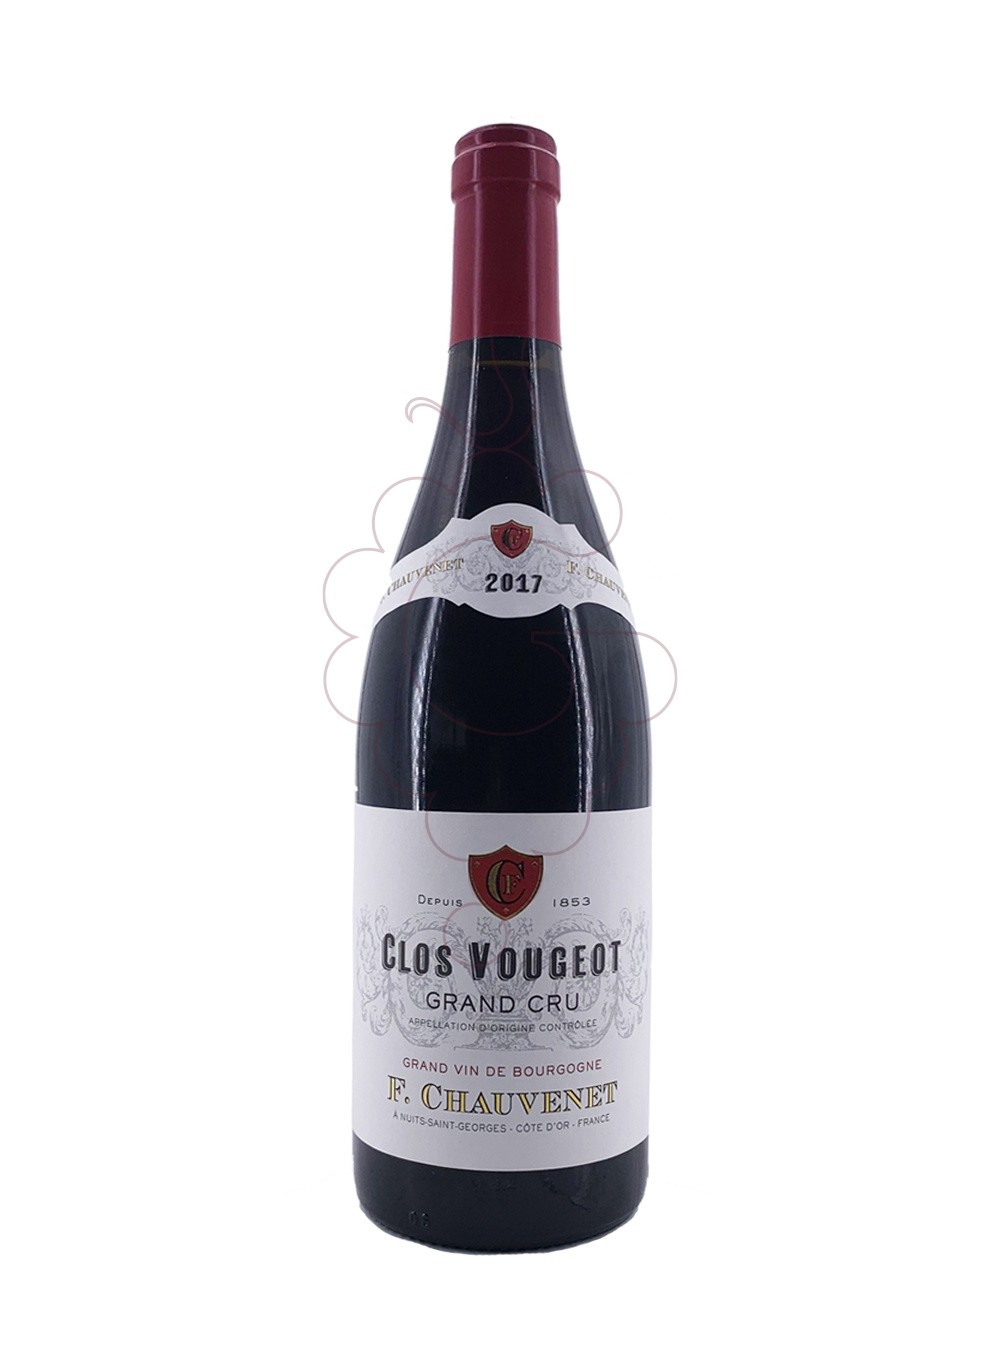 Foto F.Chauvenet Clos de Vougeot Grand Cru vi negre